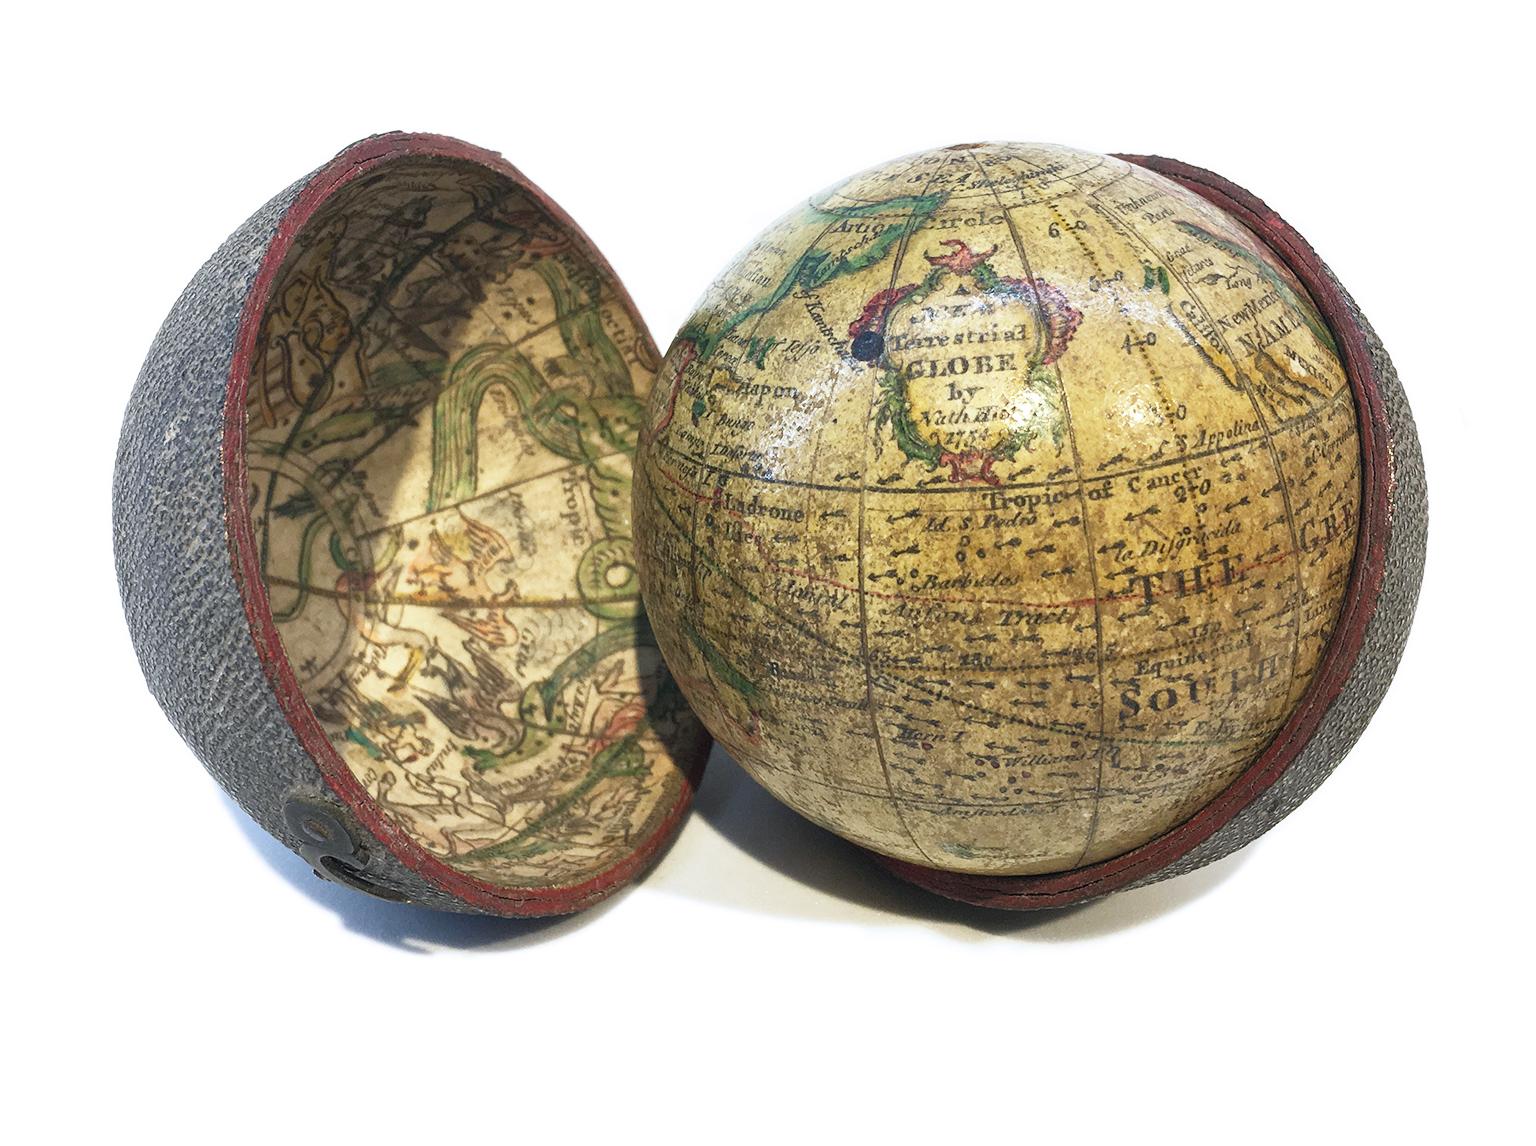 Nathaniel Hill
Globe de poche
Londres, 1754

Le globe est contenu dans son étui d'origine, lui-même recouvert de peau de requin.
La peinture d'origine de la sphère présente de légères lacunes. L'affaire n'est plus close.

La sphère mesure 6,8 cm de